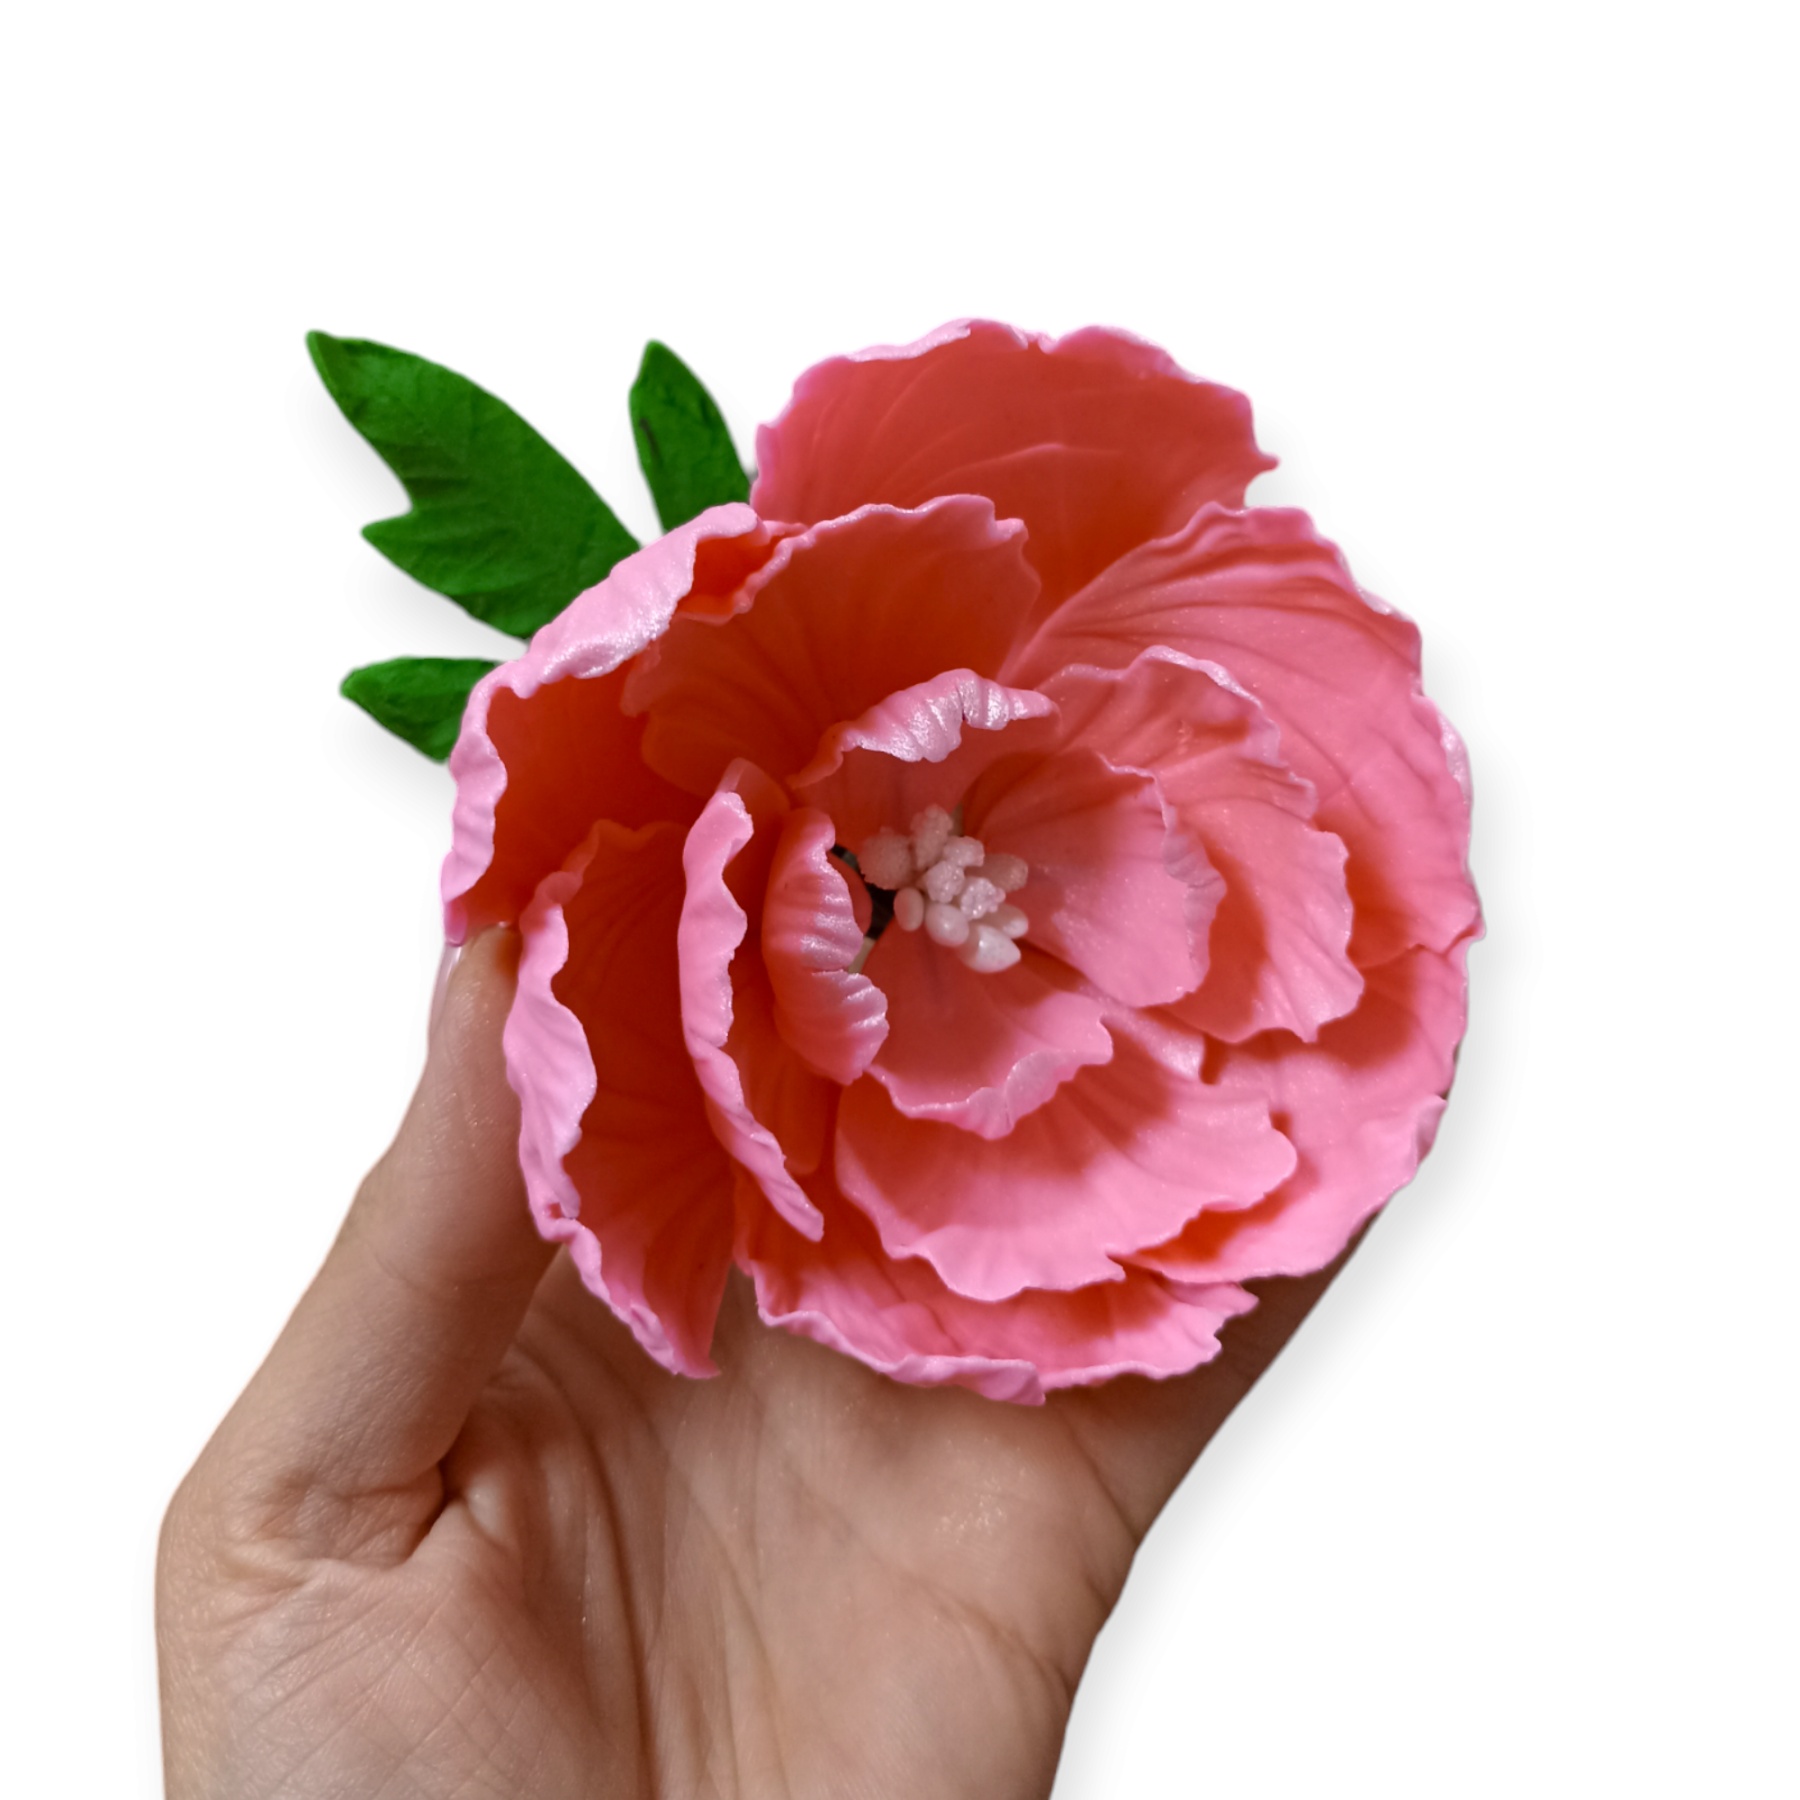 Božur cvet - roze / Slanje na odgovornost kupca!